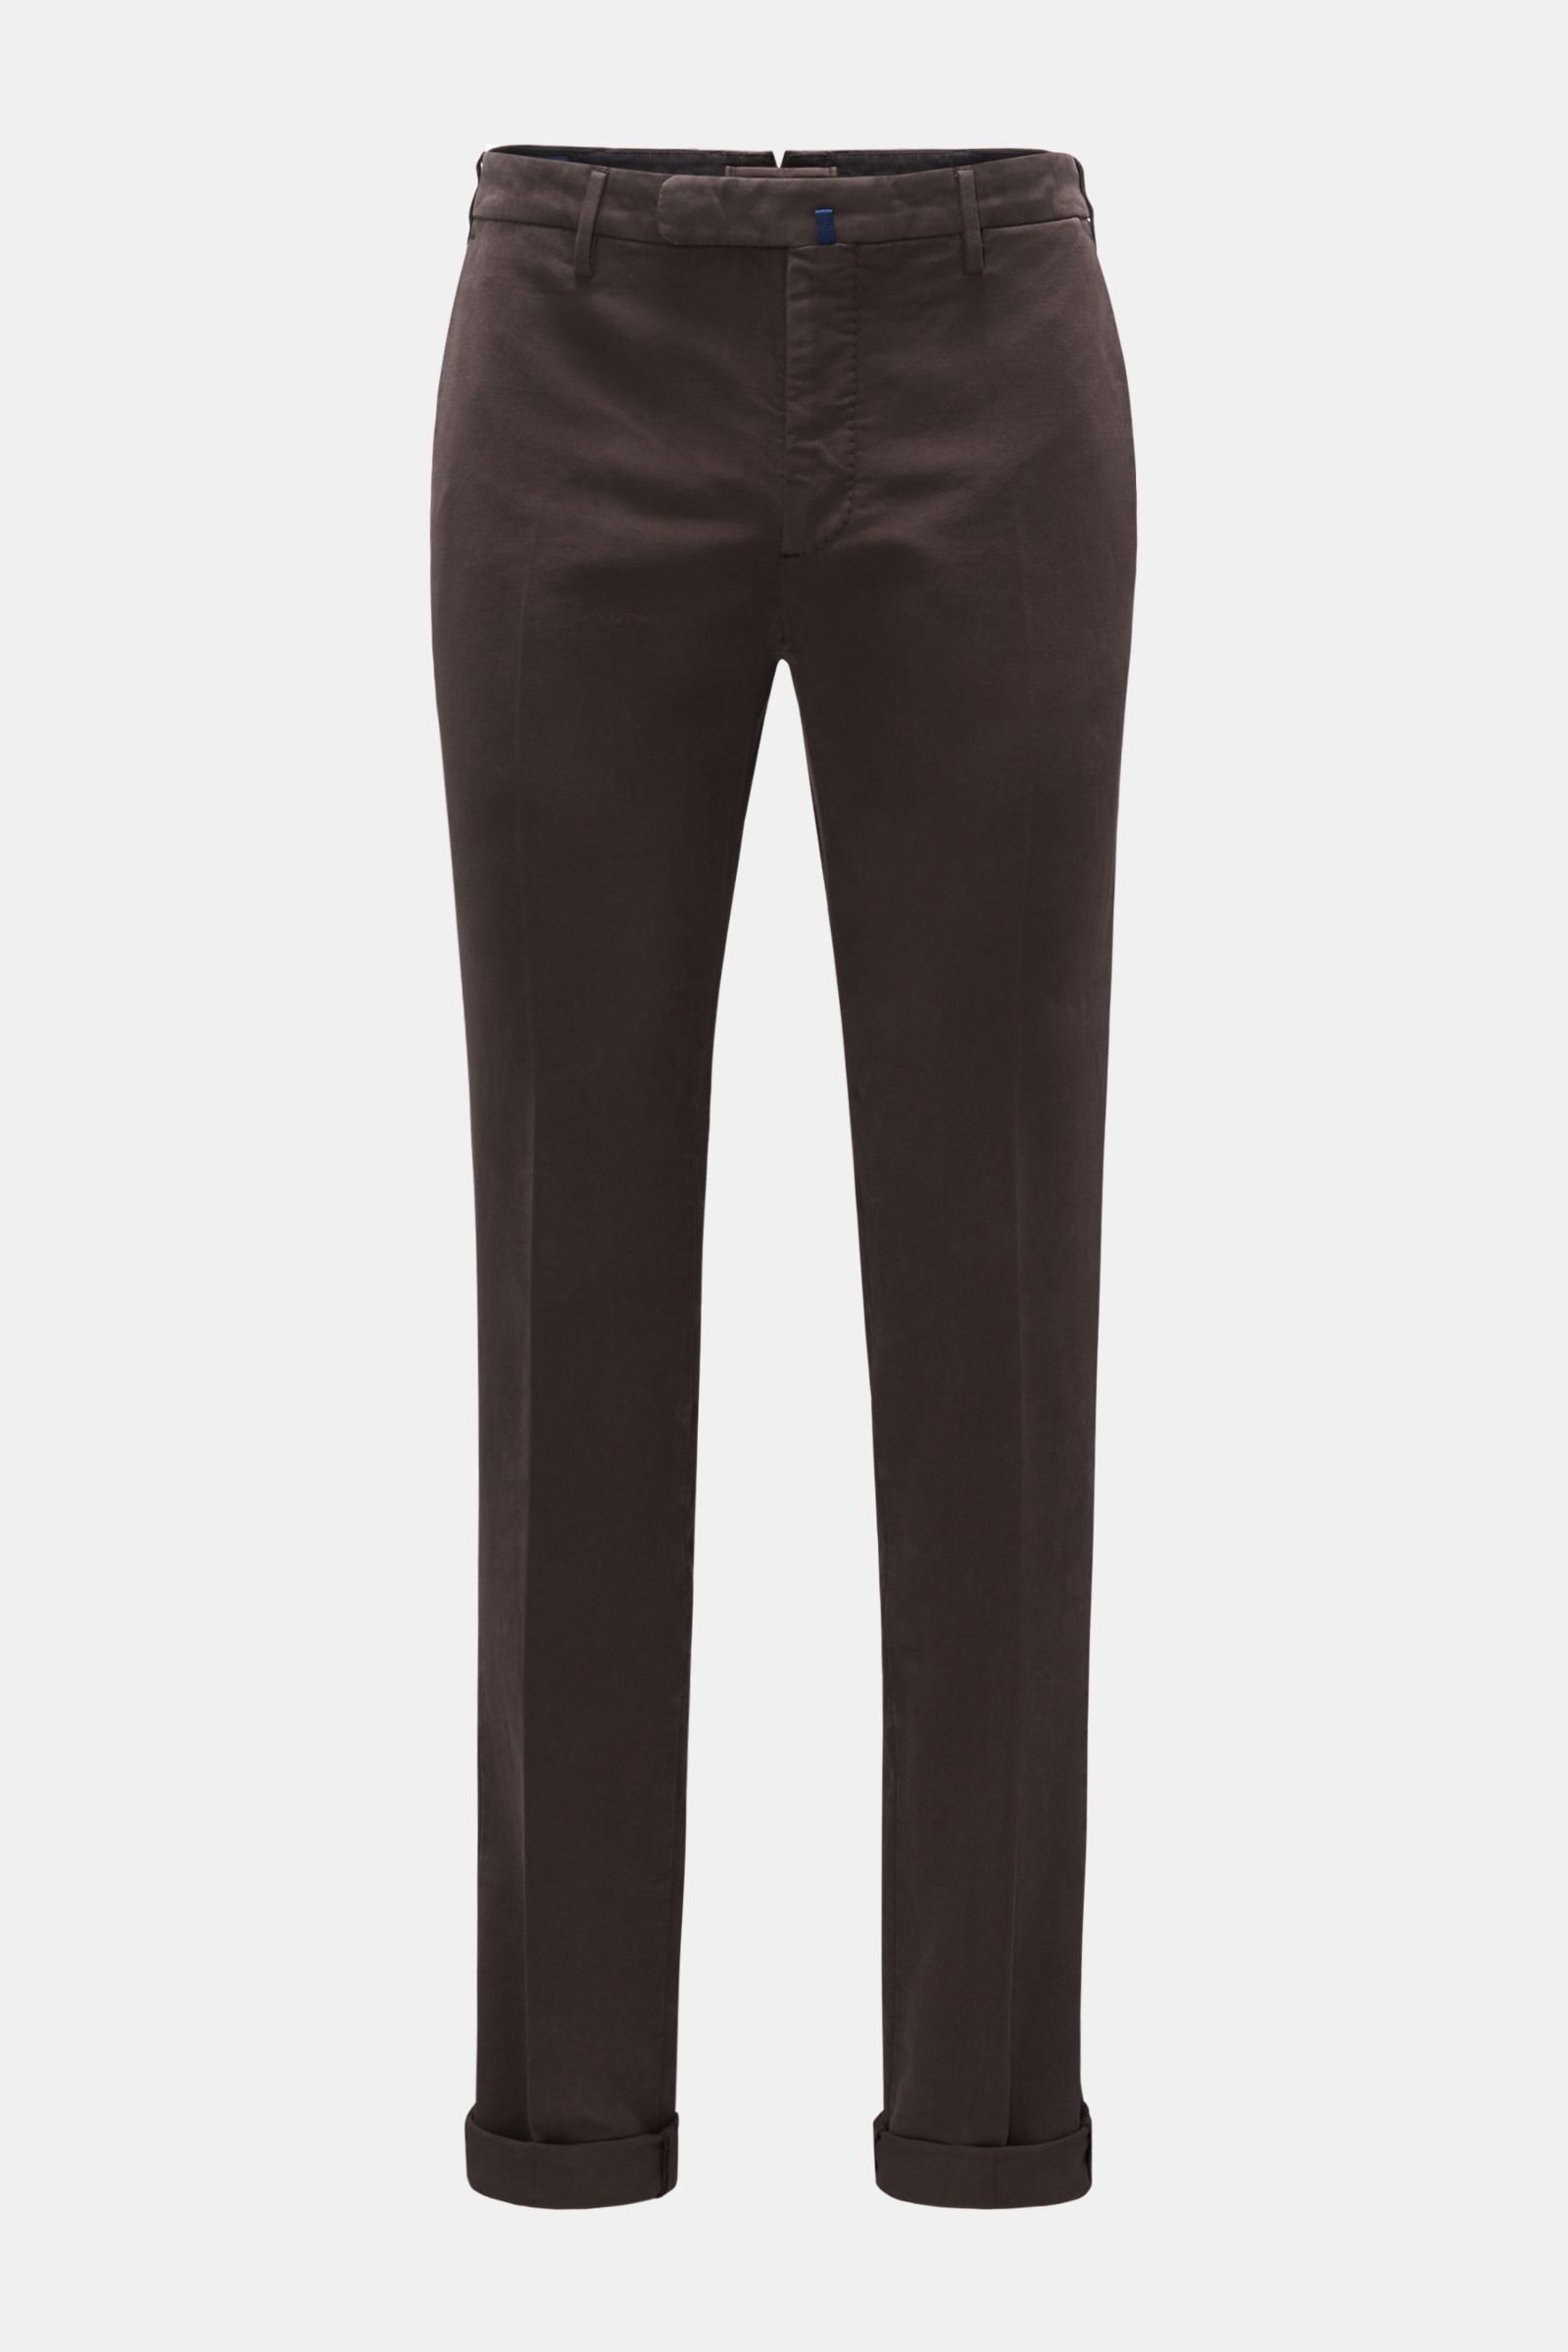 INCOTEX fustian trousers 'Slim Fit' dark brown | BRAUN Hamburg